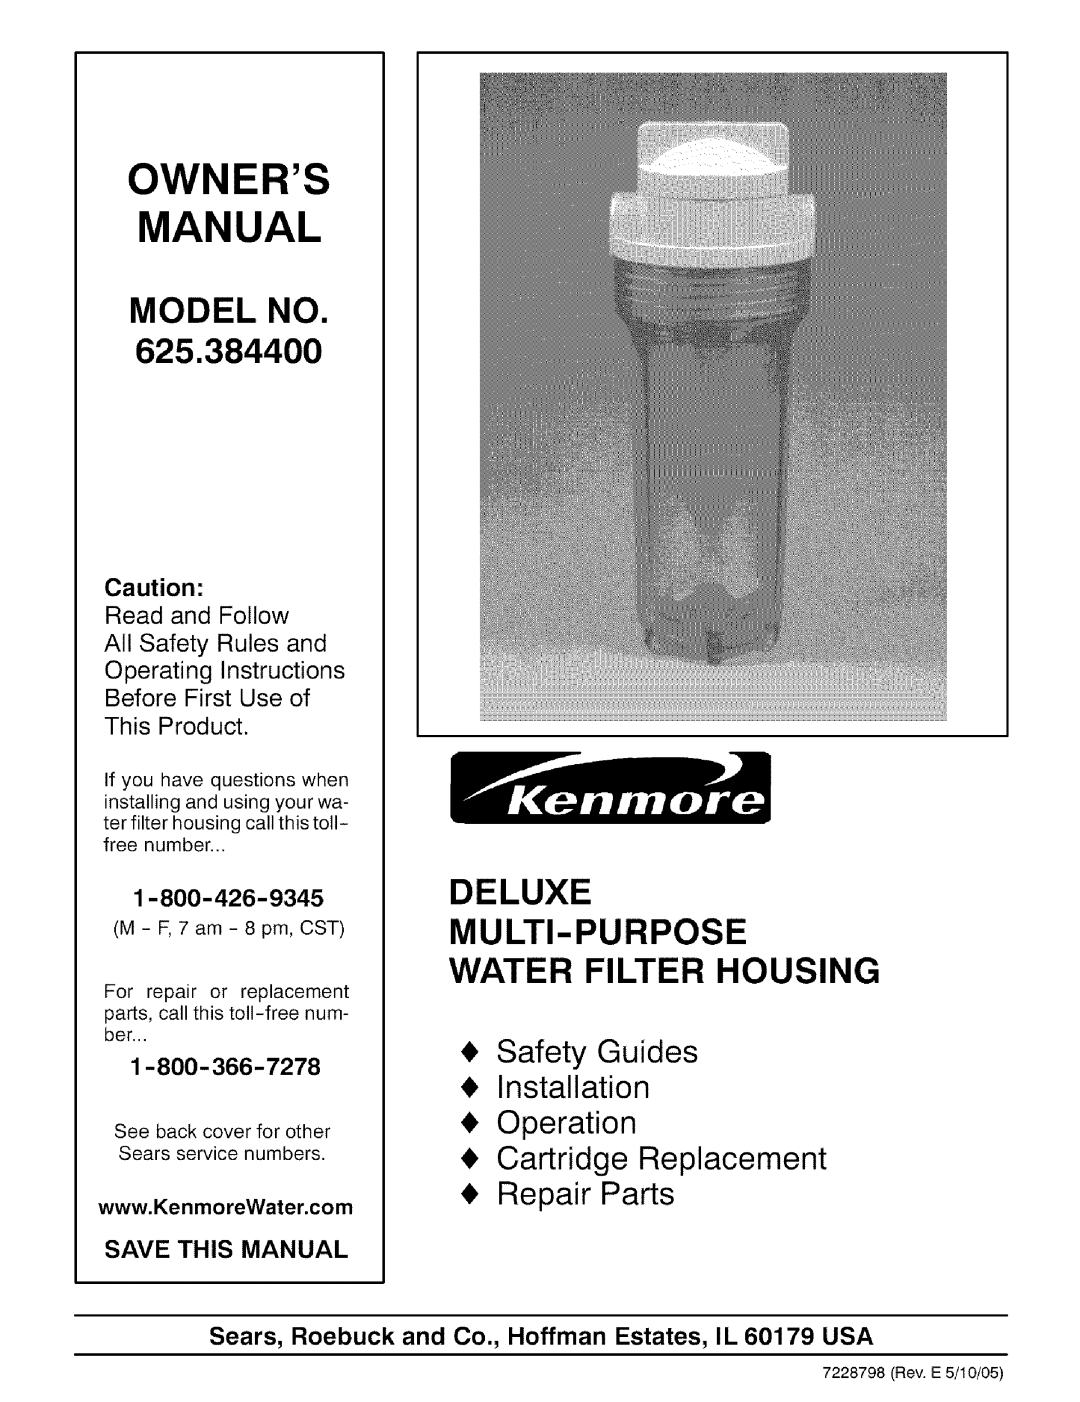 Kenmore 625.3844 owner manual Owners Manual, Model No, Deluxe Multi-Purpose Water Filter Housing, Repair Parts 